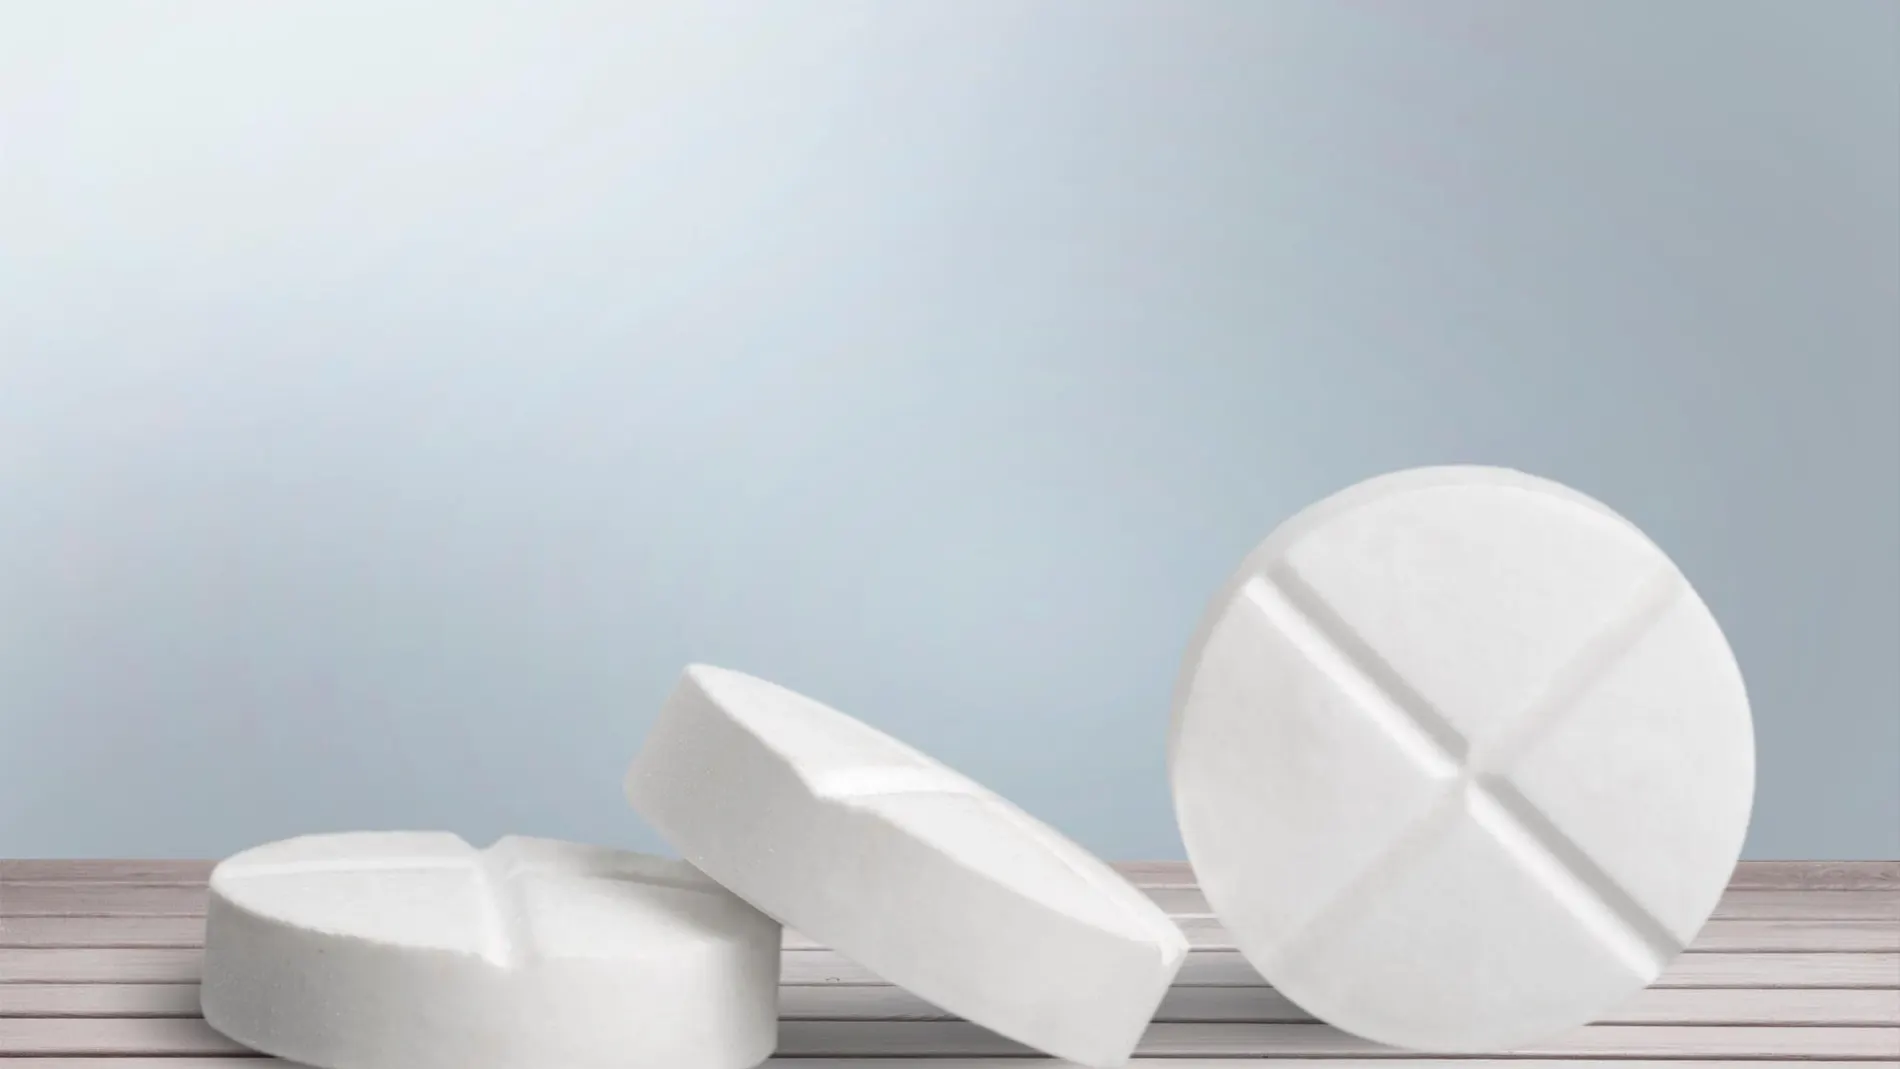 La conveniencia o no de administrar aspirina sigue siendo objeto de debate / dreamstime